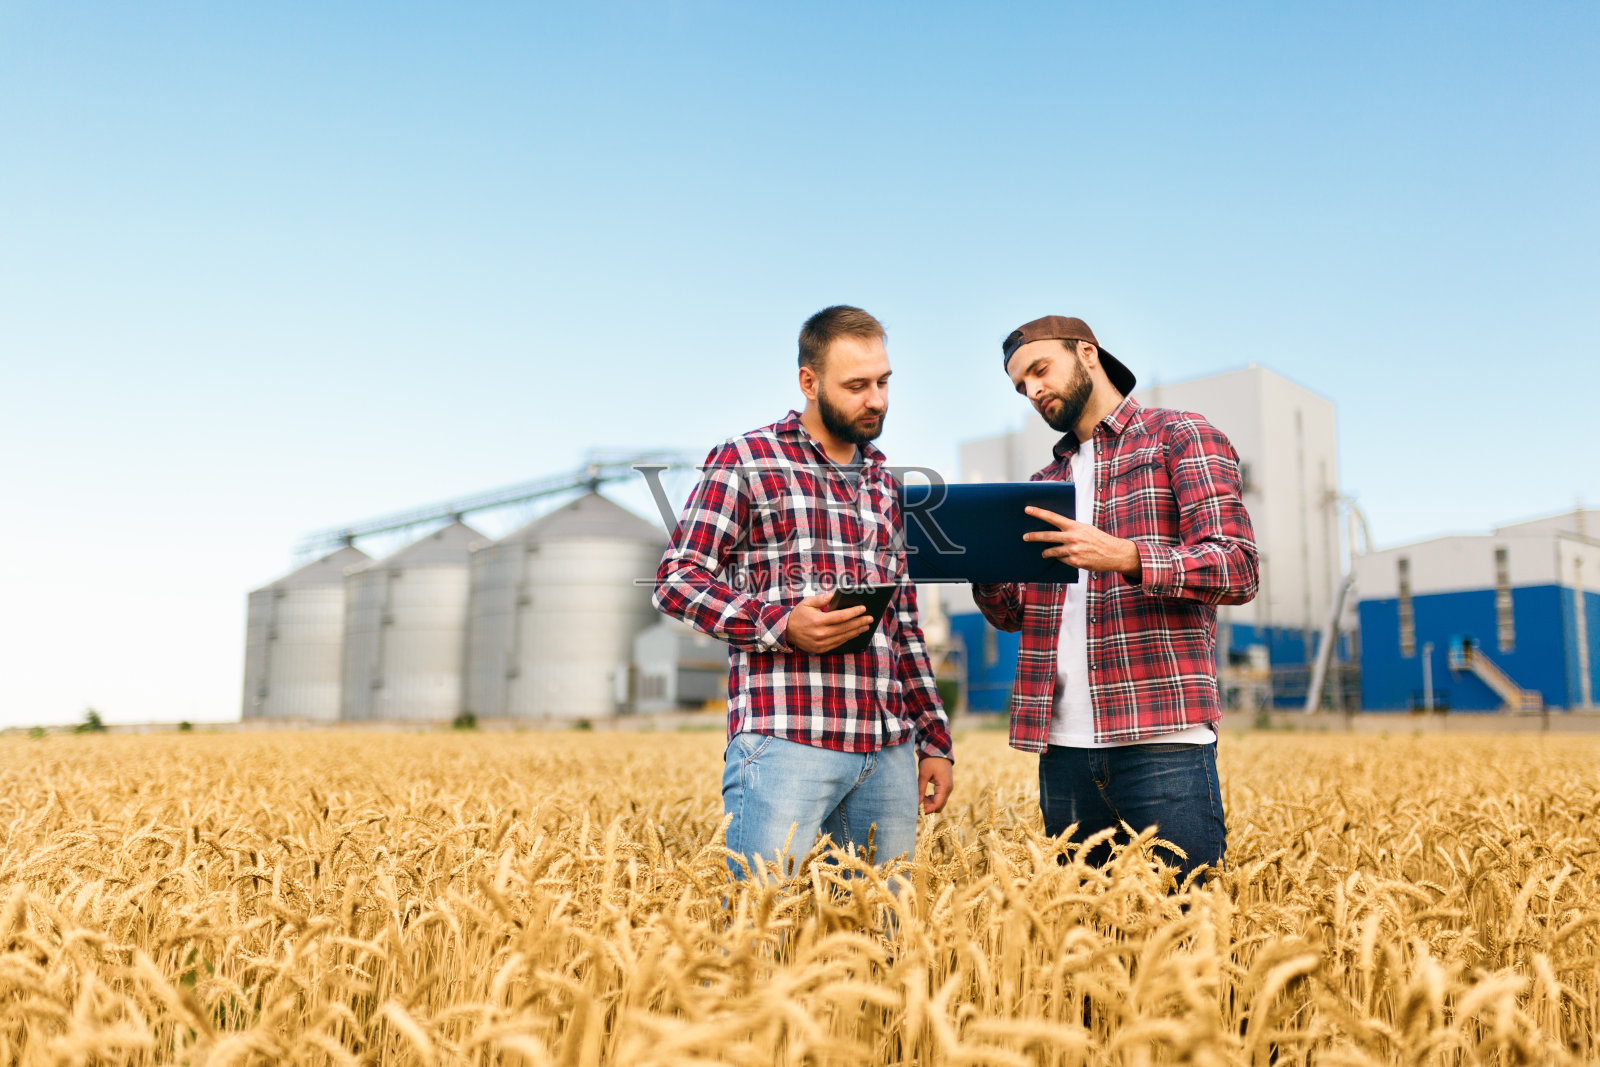 两个农民拿着石板站在麦田里。农学家以谷物终端电梯为背景，探讨小麦穗间的收获与作物照片摄影图片